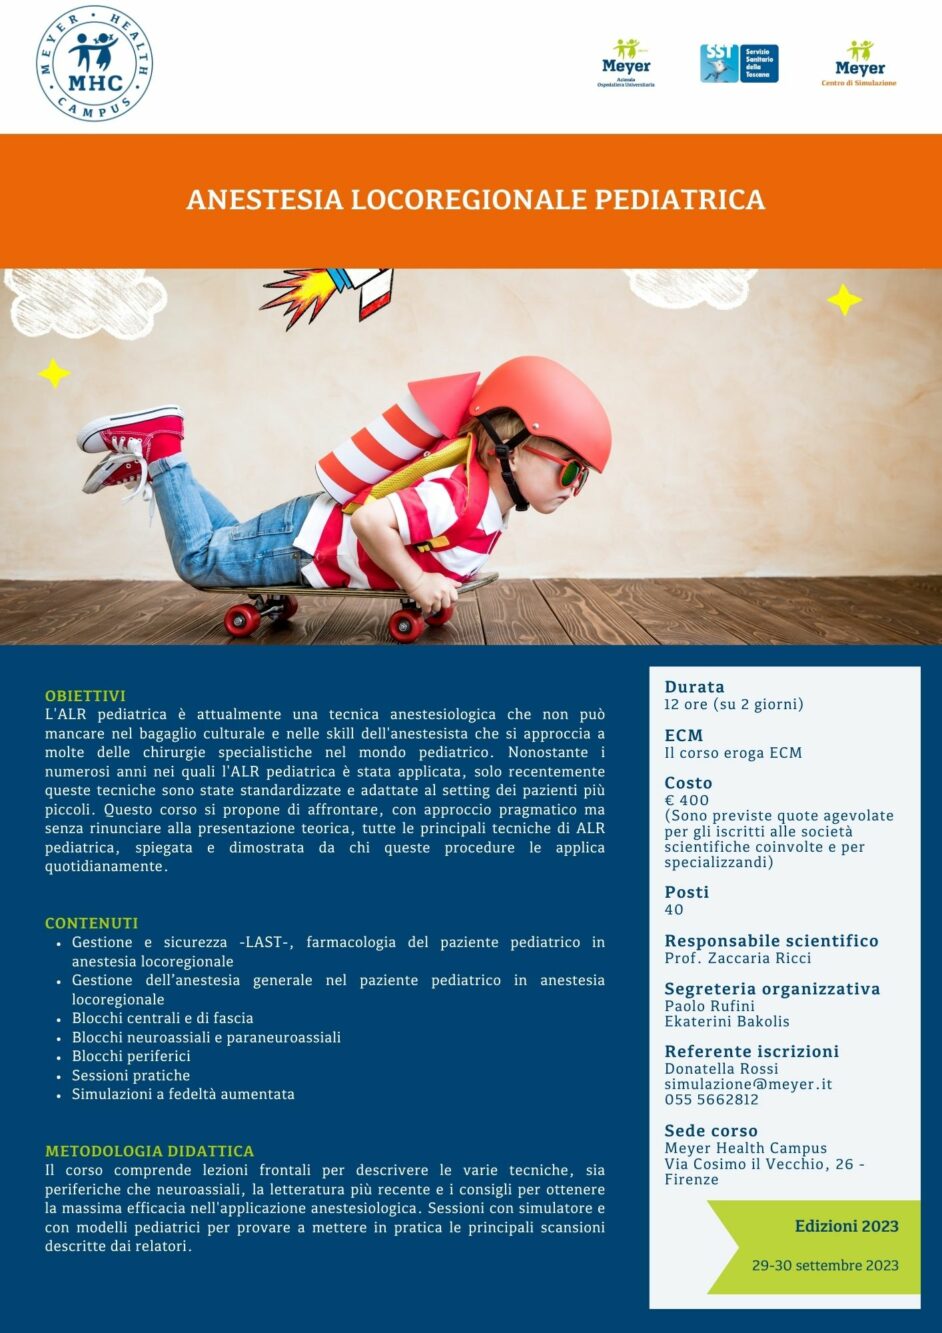 Anestesia locoregionale pediatrica (29-30 settembre 2023)